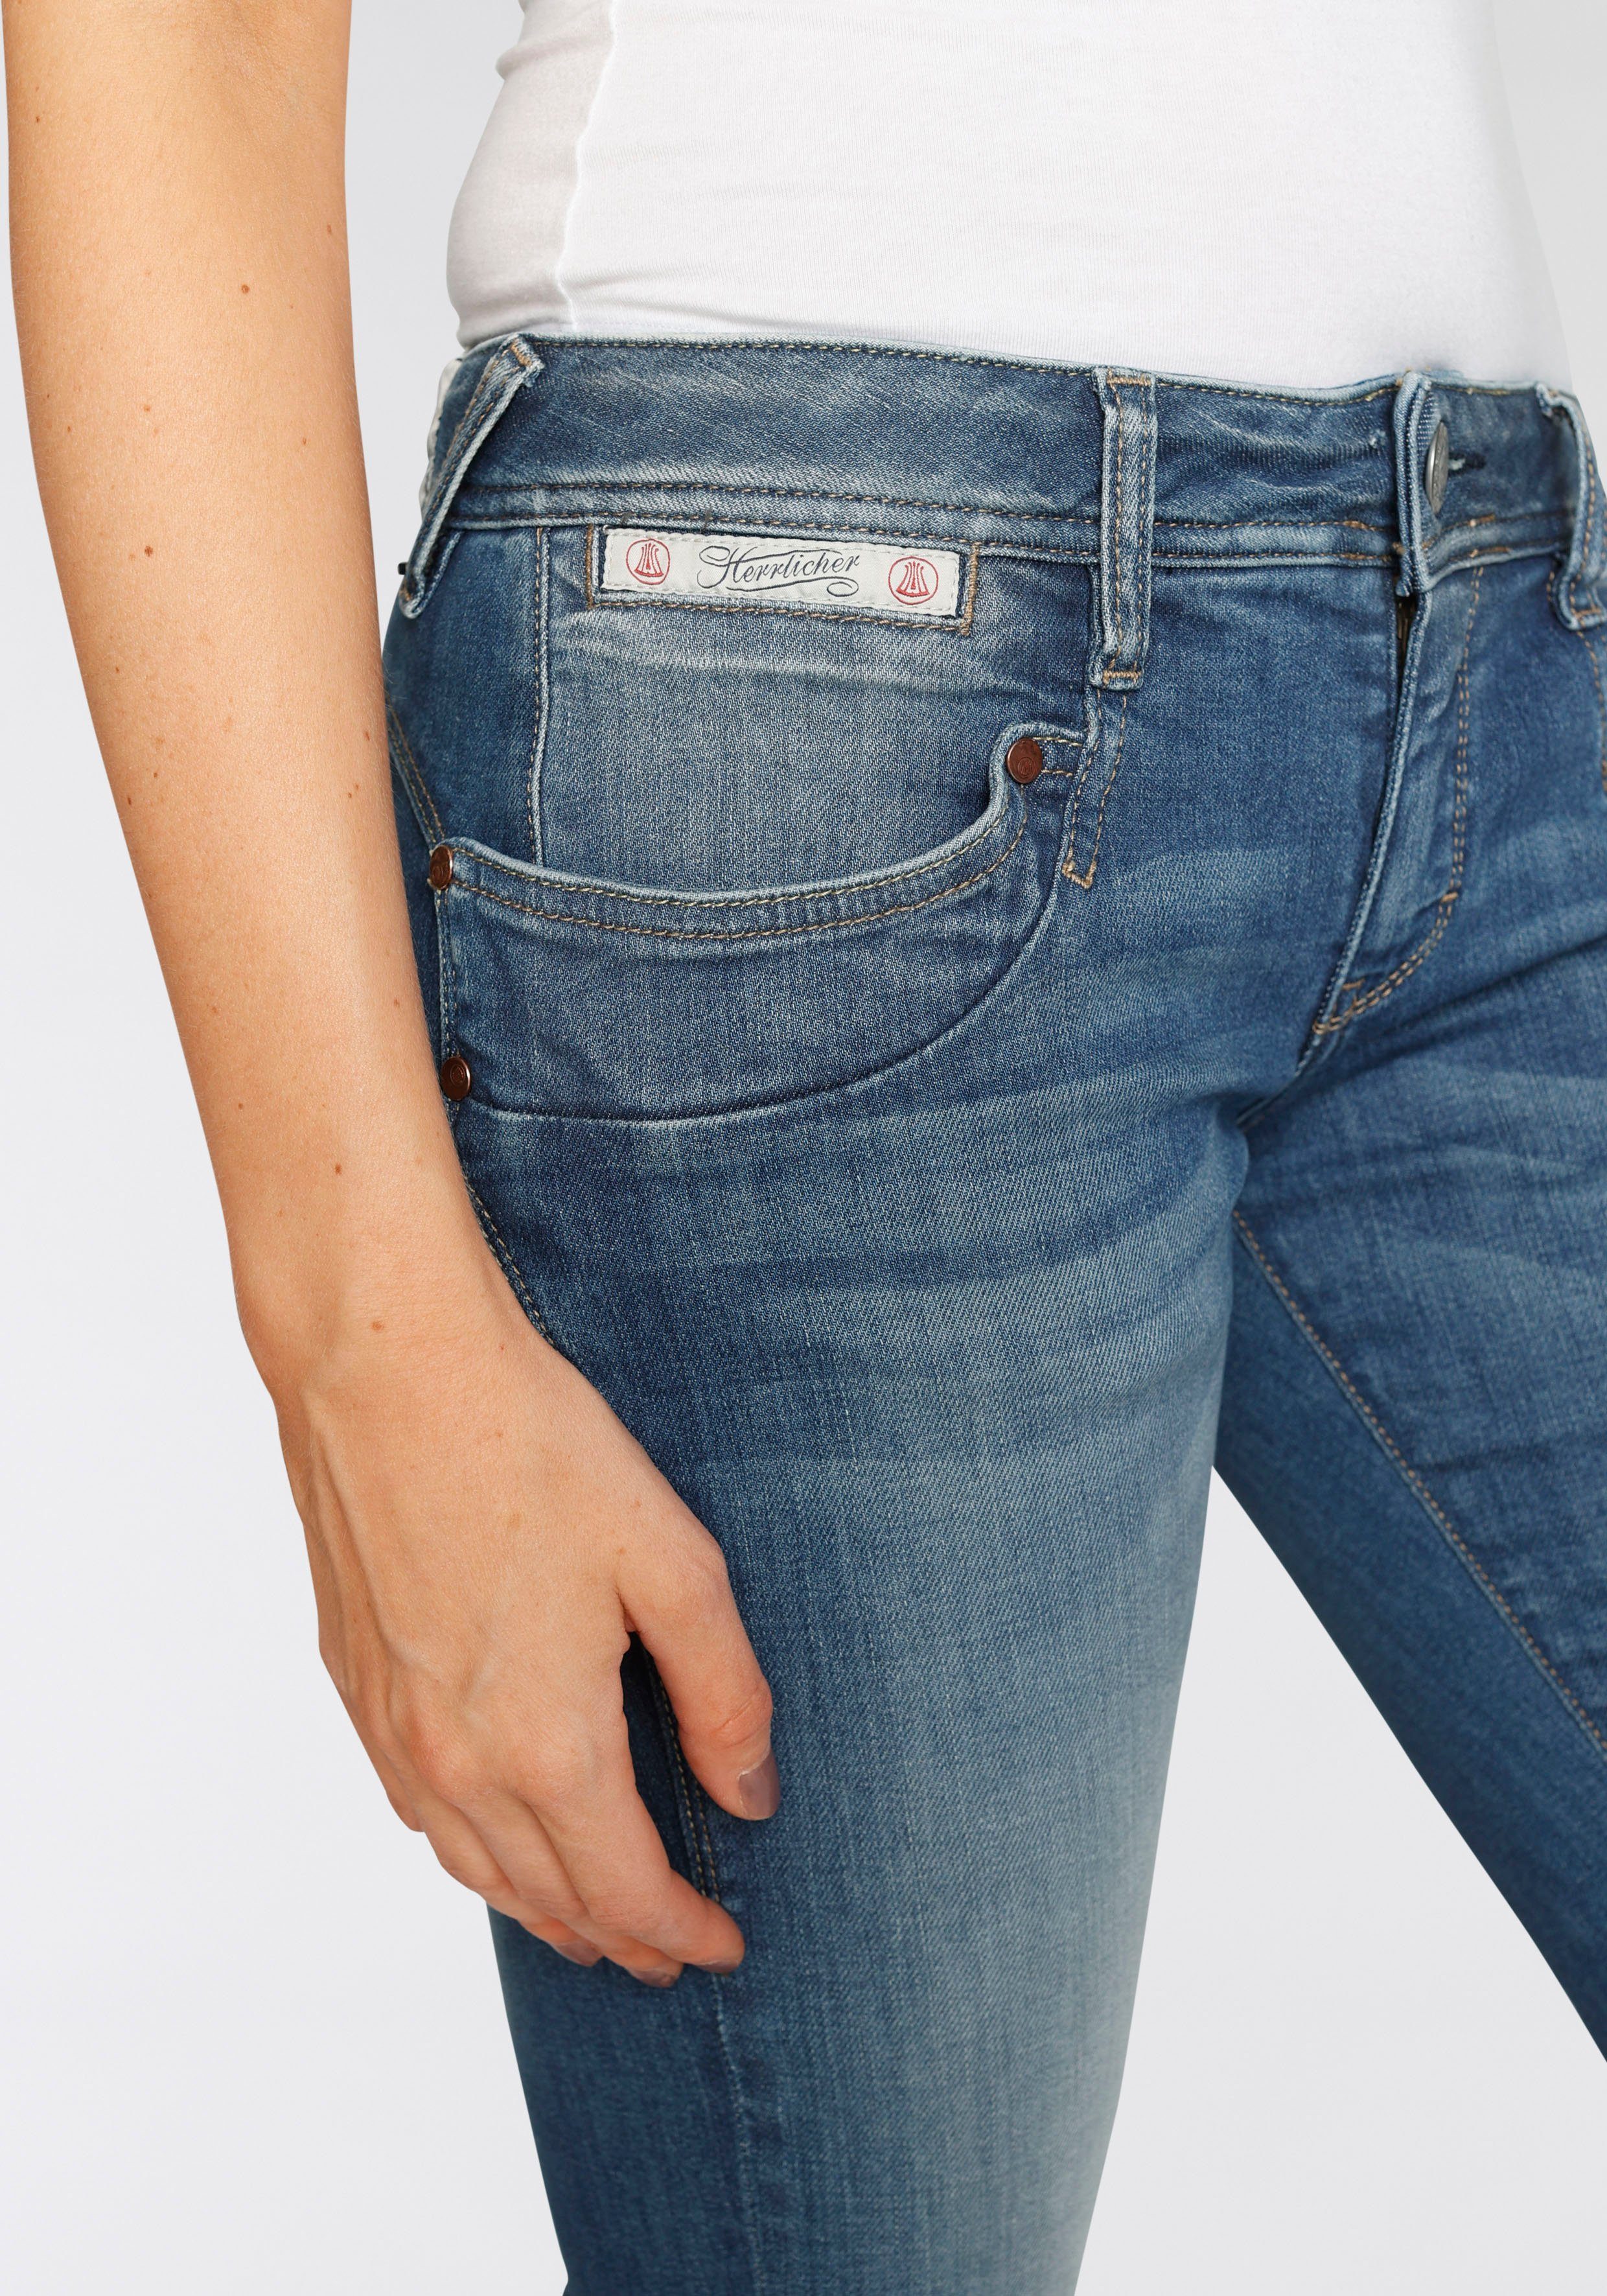 ORGANIC Technology Slim-fit-Jeans PIPER Herrlicher umweltfreundlich dank SLIM Kitotex